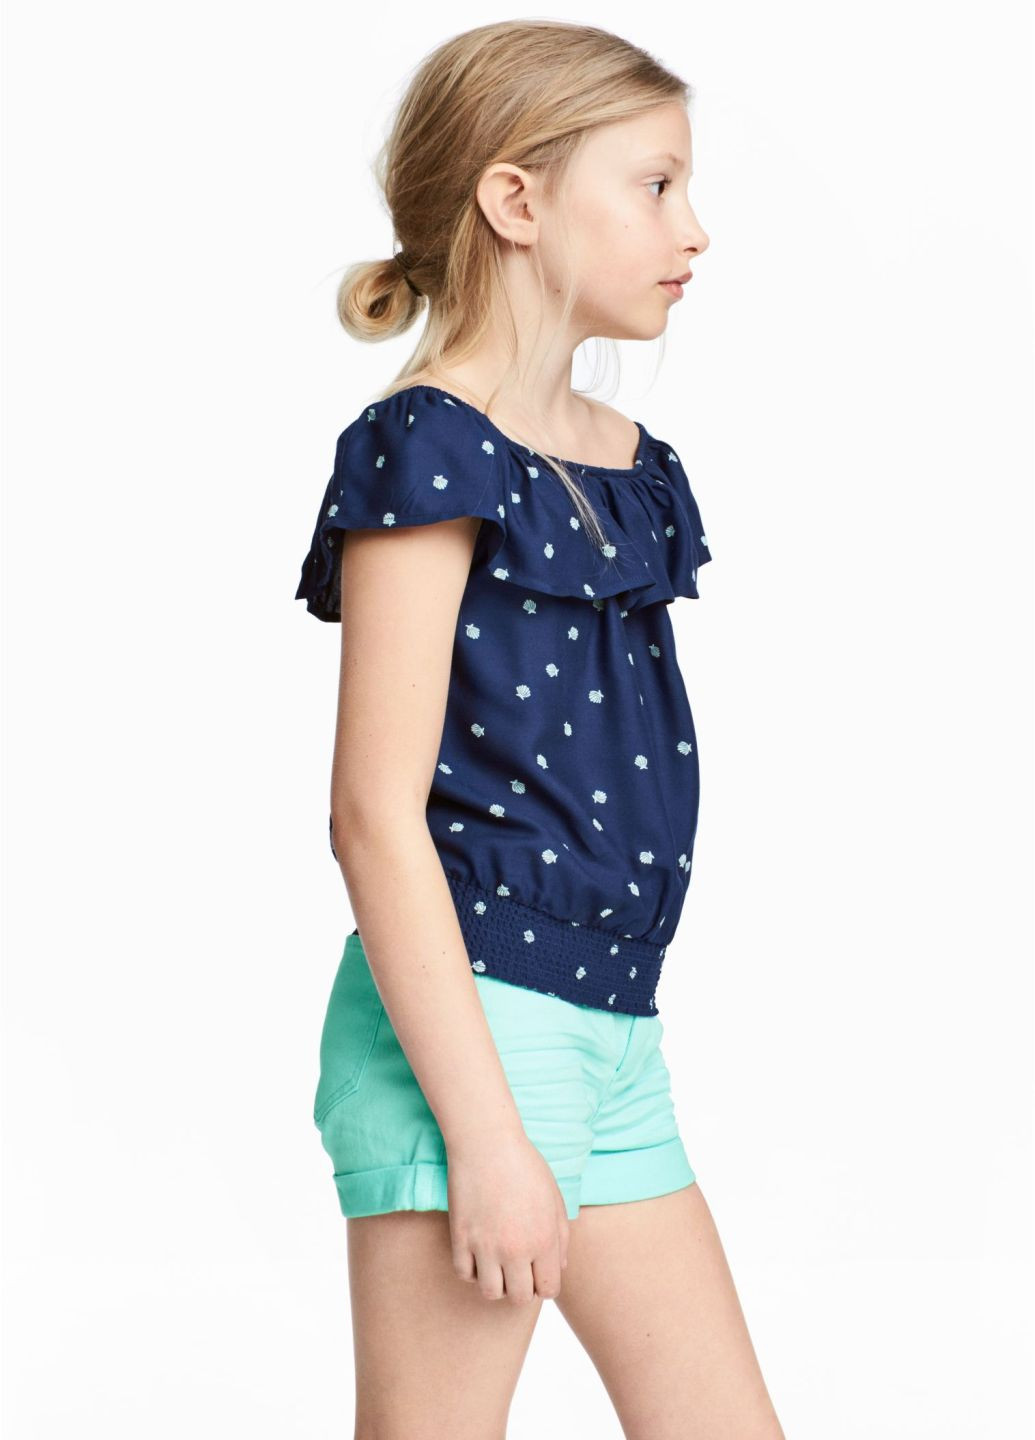 Светло-синяя с орнаментом блузка H&M летняя